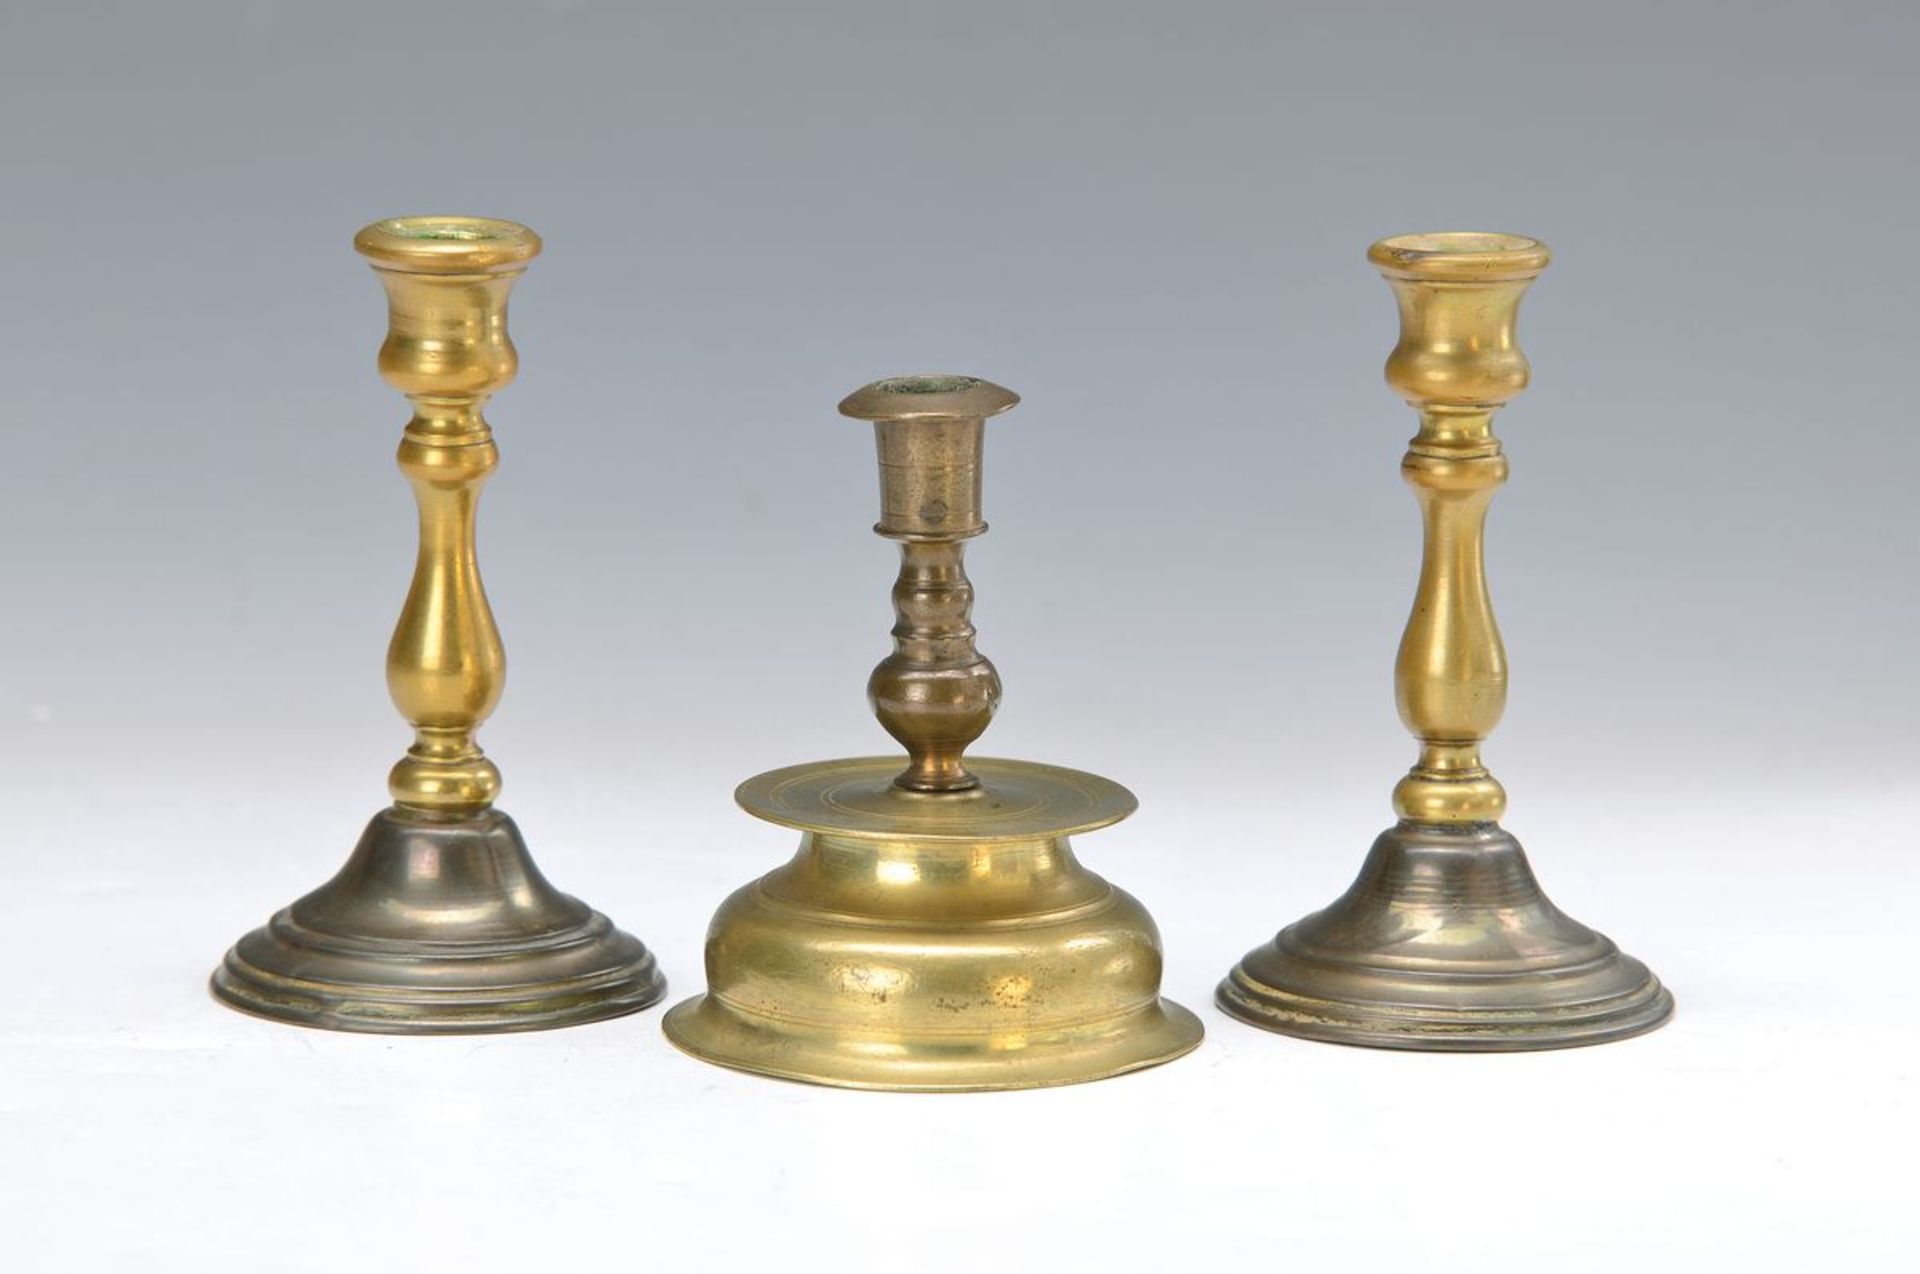 Drei kleine Leuchter, 17./18. Jh., Bronze/Messing, l. verbeult, H. ca. 9-10.5 cm